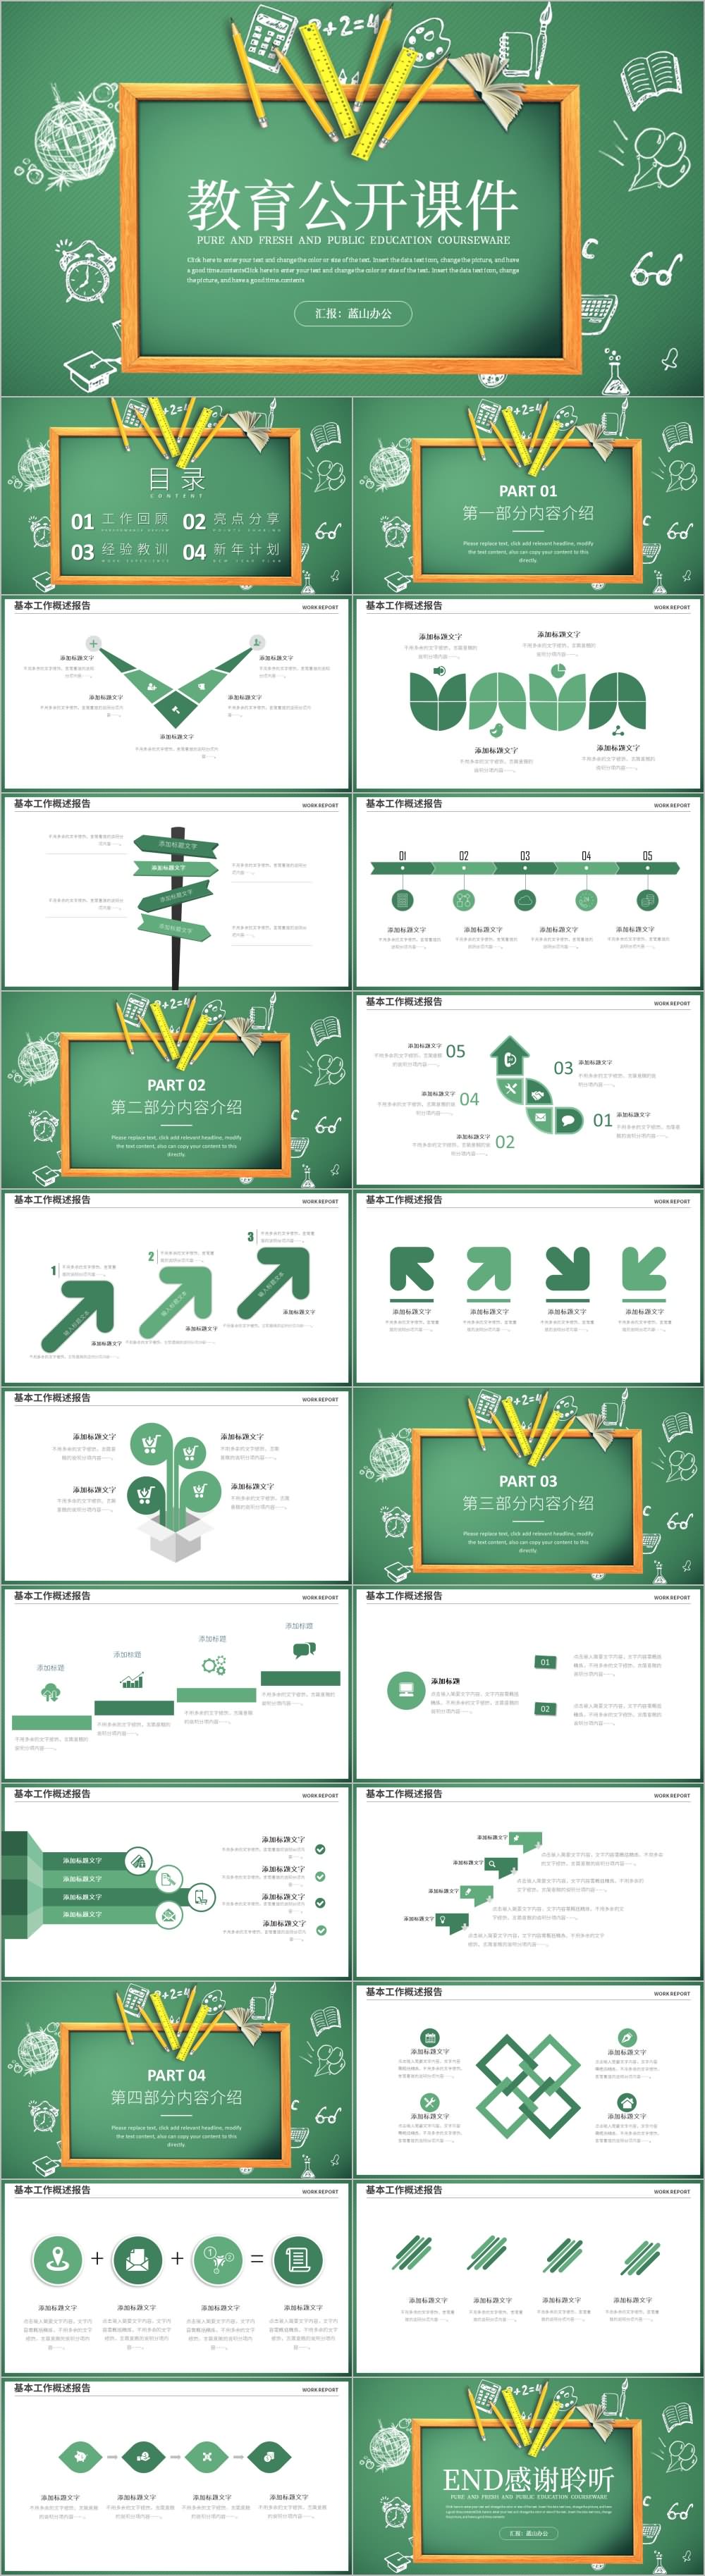 绿色黑板教育培训教学设计公开课PPT模板